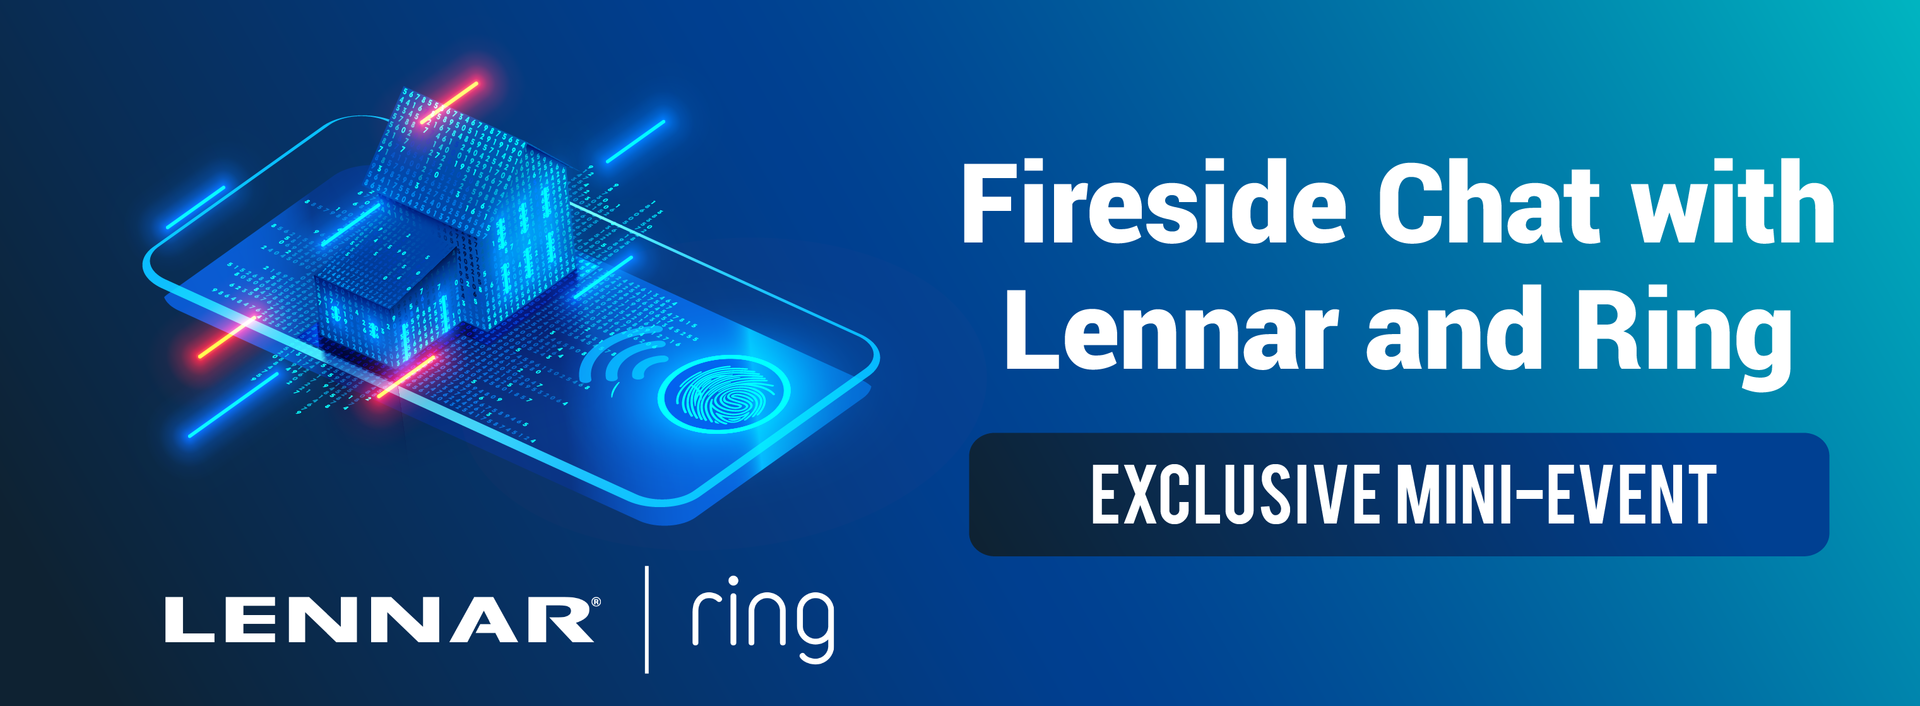 fireside chat lennar ring